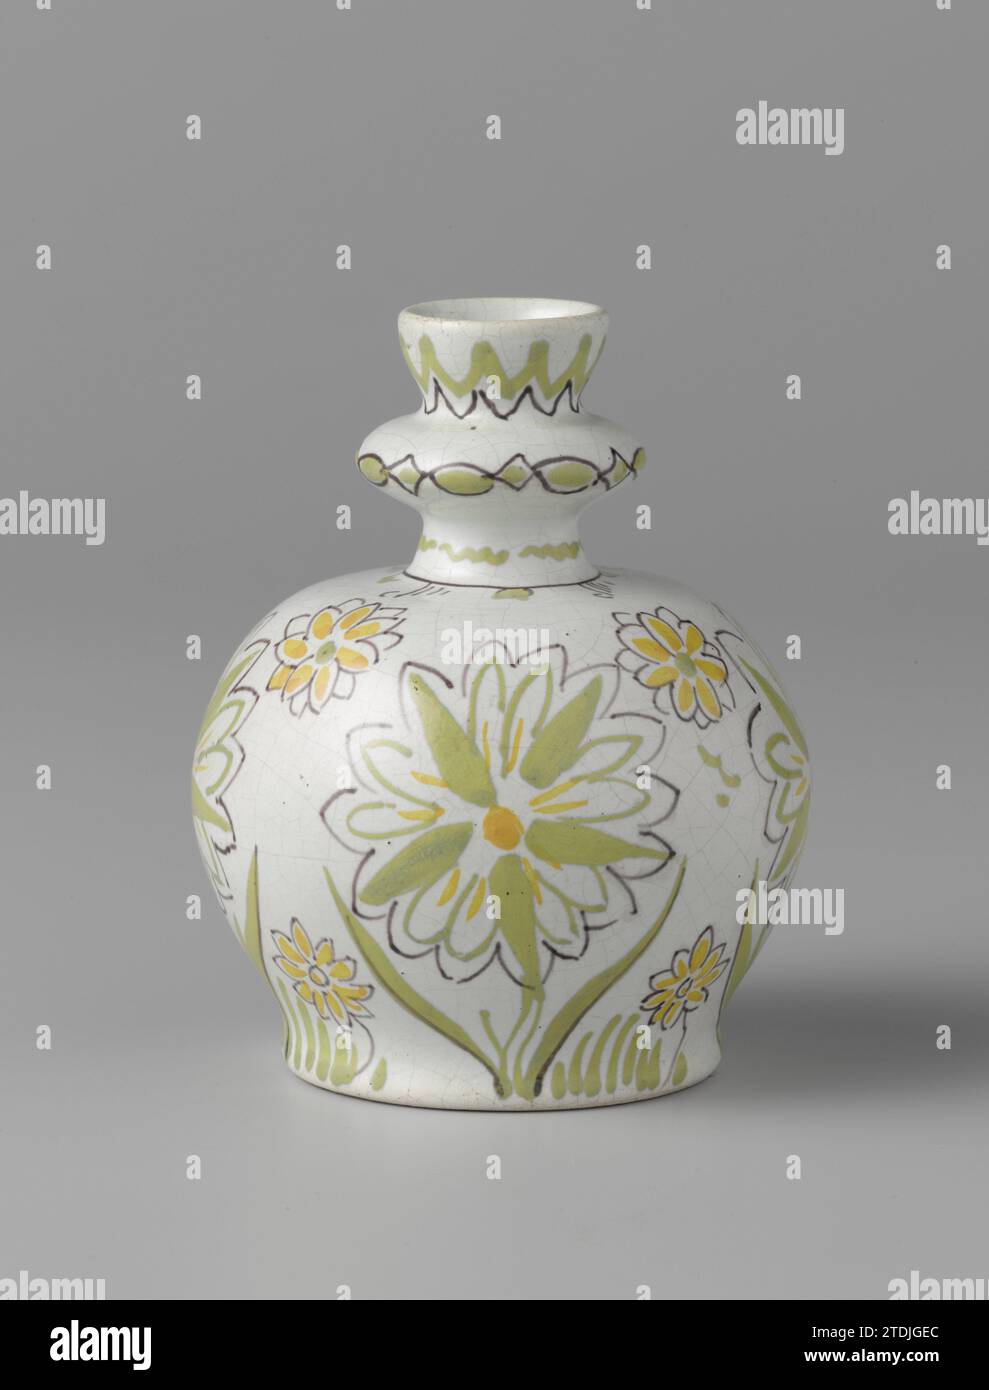 Vaso con decorazioni floreali, la bottiglia di porceleijne, c. 1880 - c. 1920 vaso di terracotta, corpo sferico, rotondo, collo tagliato con nodus al di sopra del quale il bordo della bocca è eccezionale. Il corpo e' decorato con fiori nei colori verde, giallo e nero. Terracotta Delft. Vaso glassa in terracotta, corpo sferico, rotondo, collo tagliato con nodus sopra il quale il bordo della bocca è eccezionale. Il corpo e' decorato con fiori nei colori verde, giallo e nero. Terracotta Delft. glassa Foto Stock